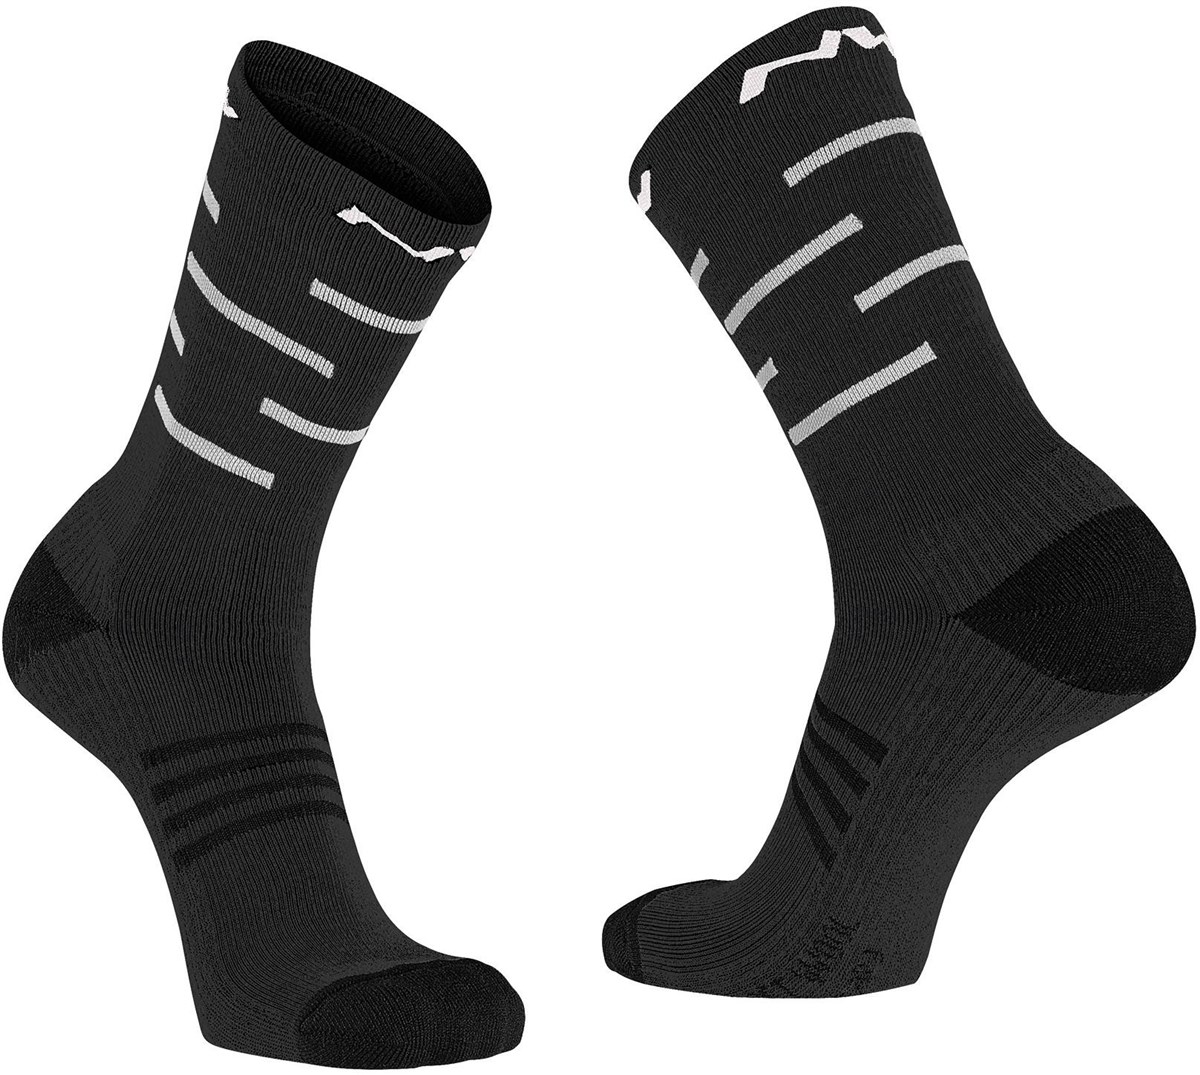 Northwave Extreme Pro High Socks product image